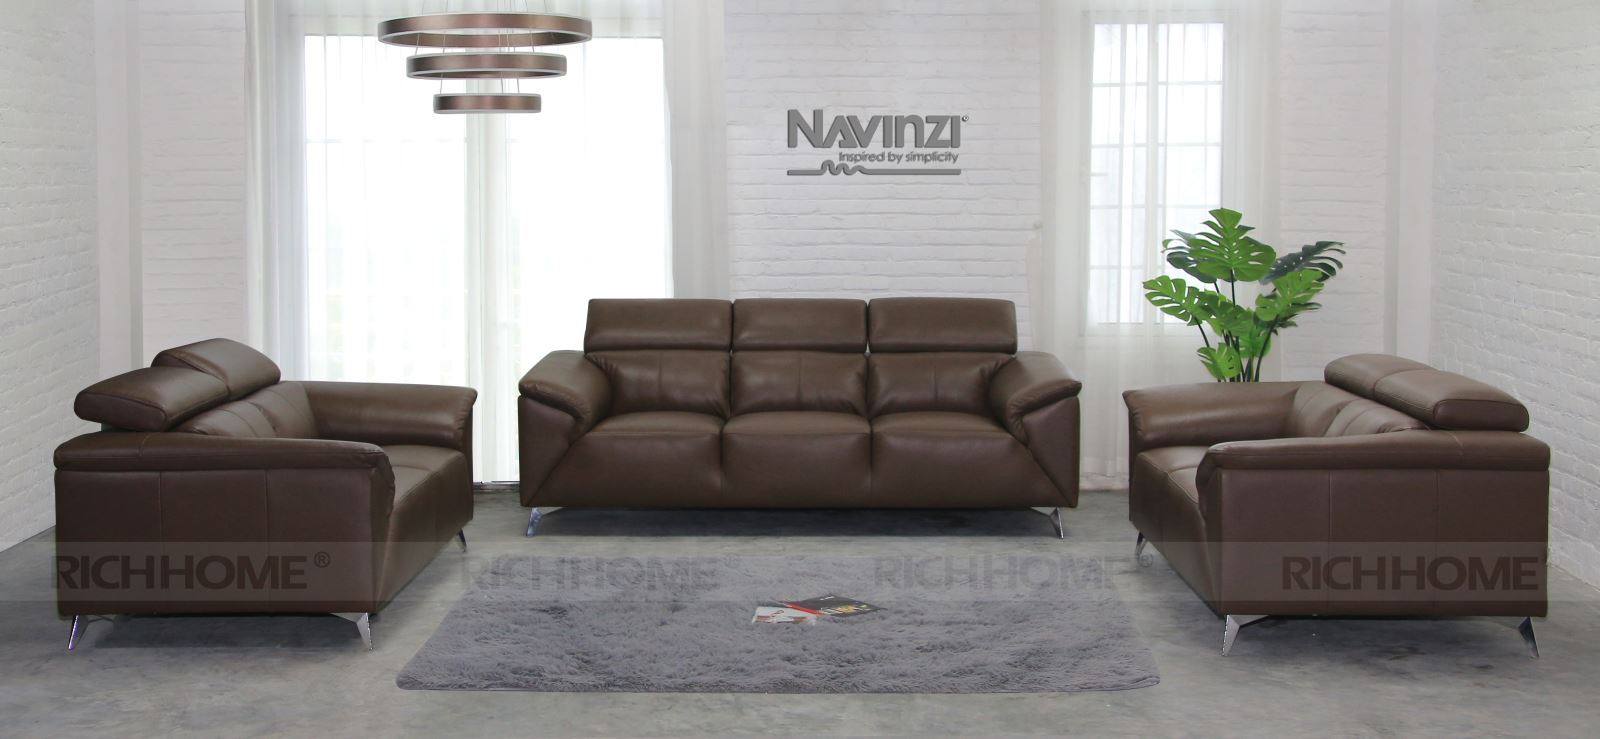 15 mẫu bàn ghế sofa phòng khách nhập khẩu đáng mua nhất - Ảnh 12